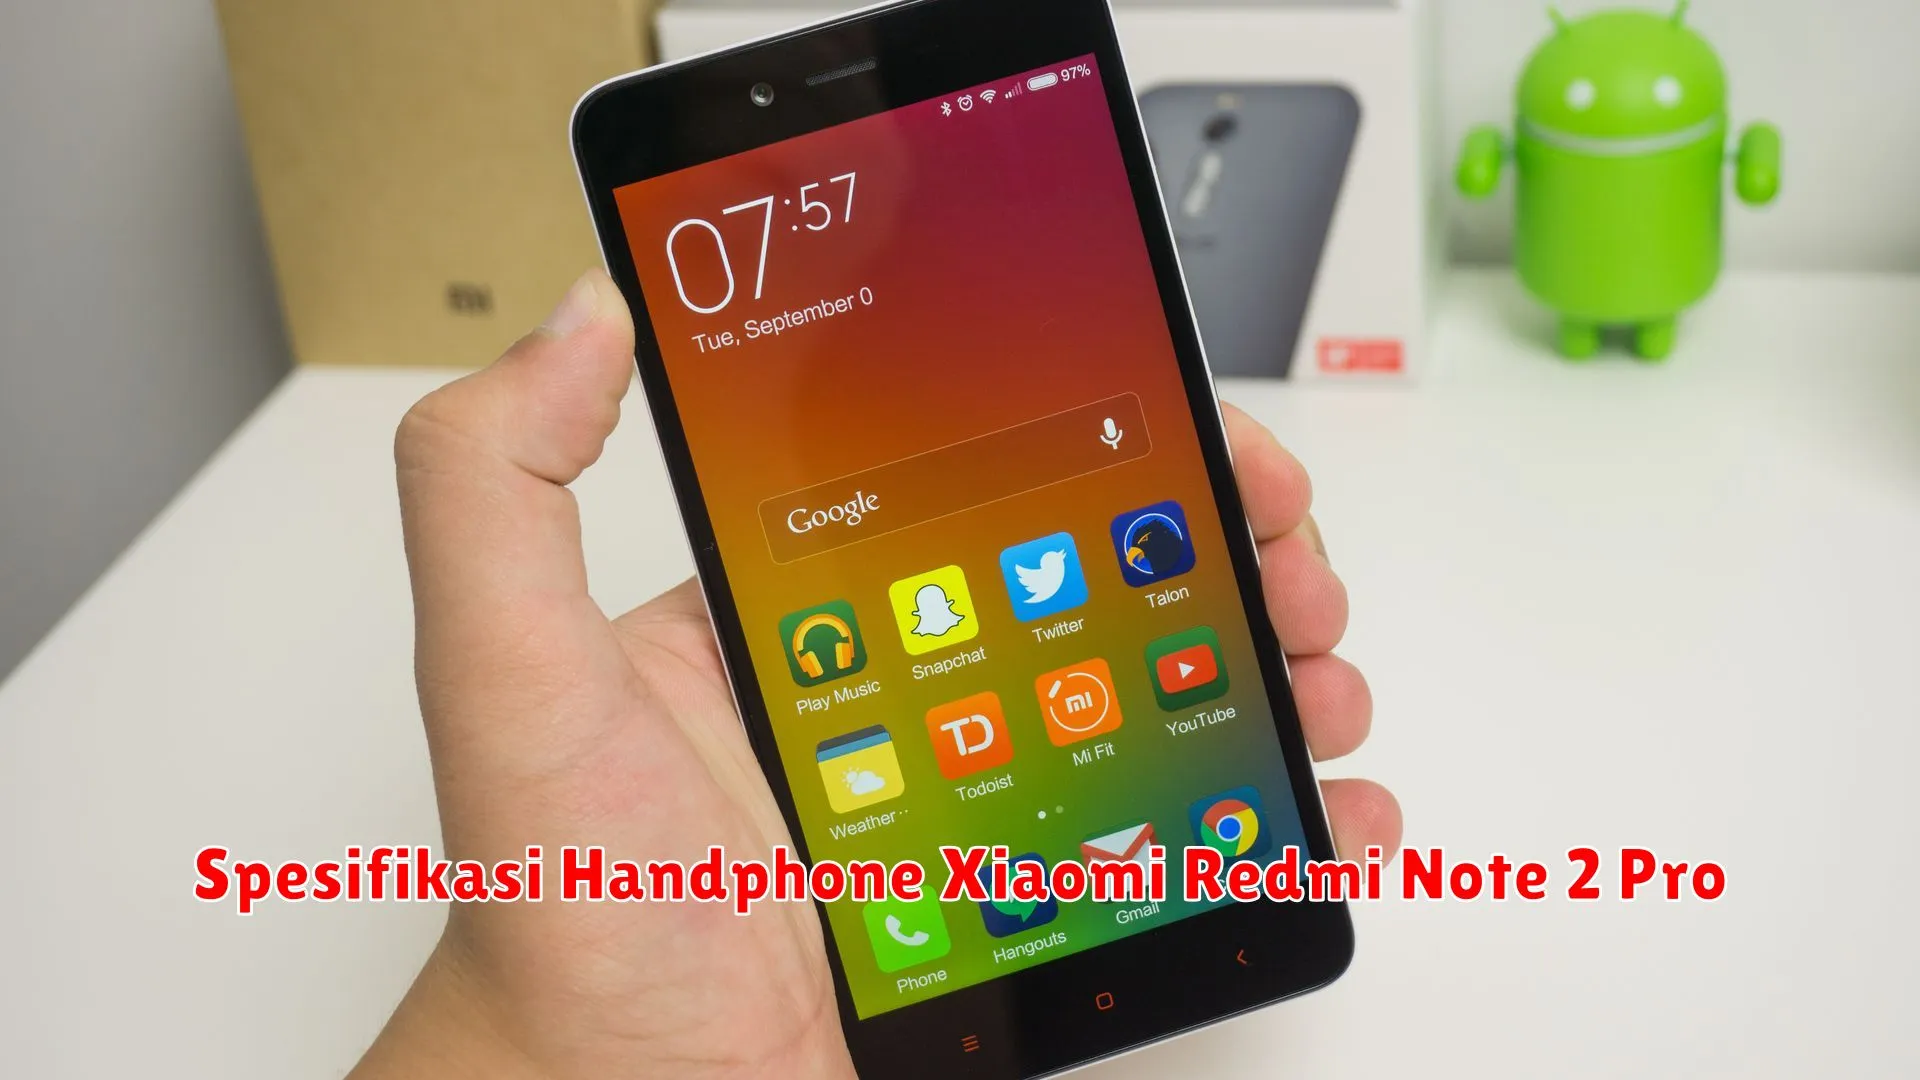 Spesifikasi Handphone Xiaomi Redmi Note 2 Pro